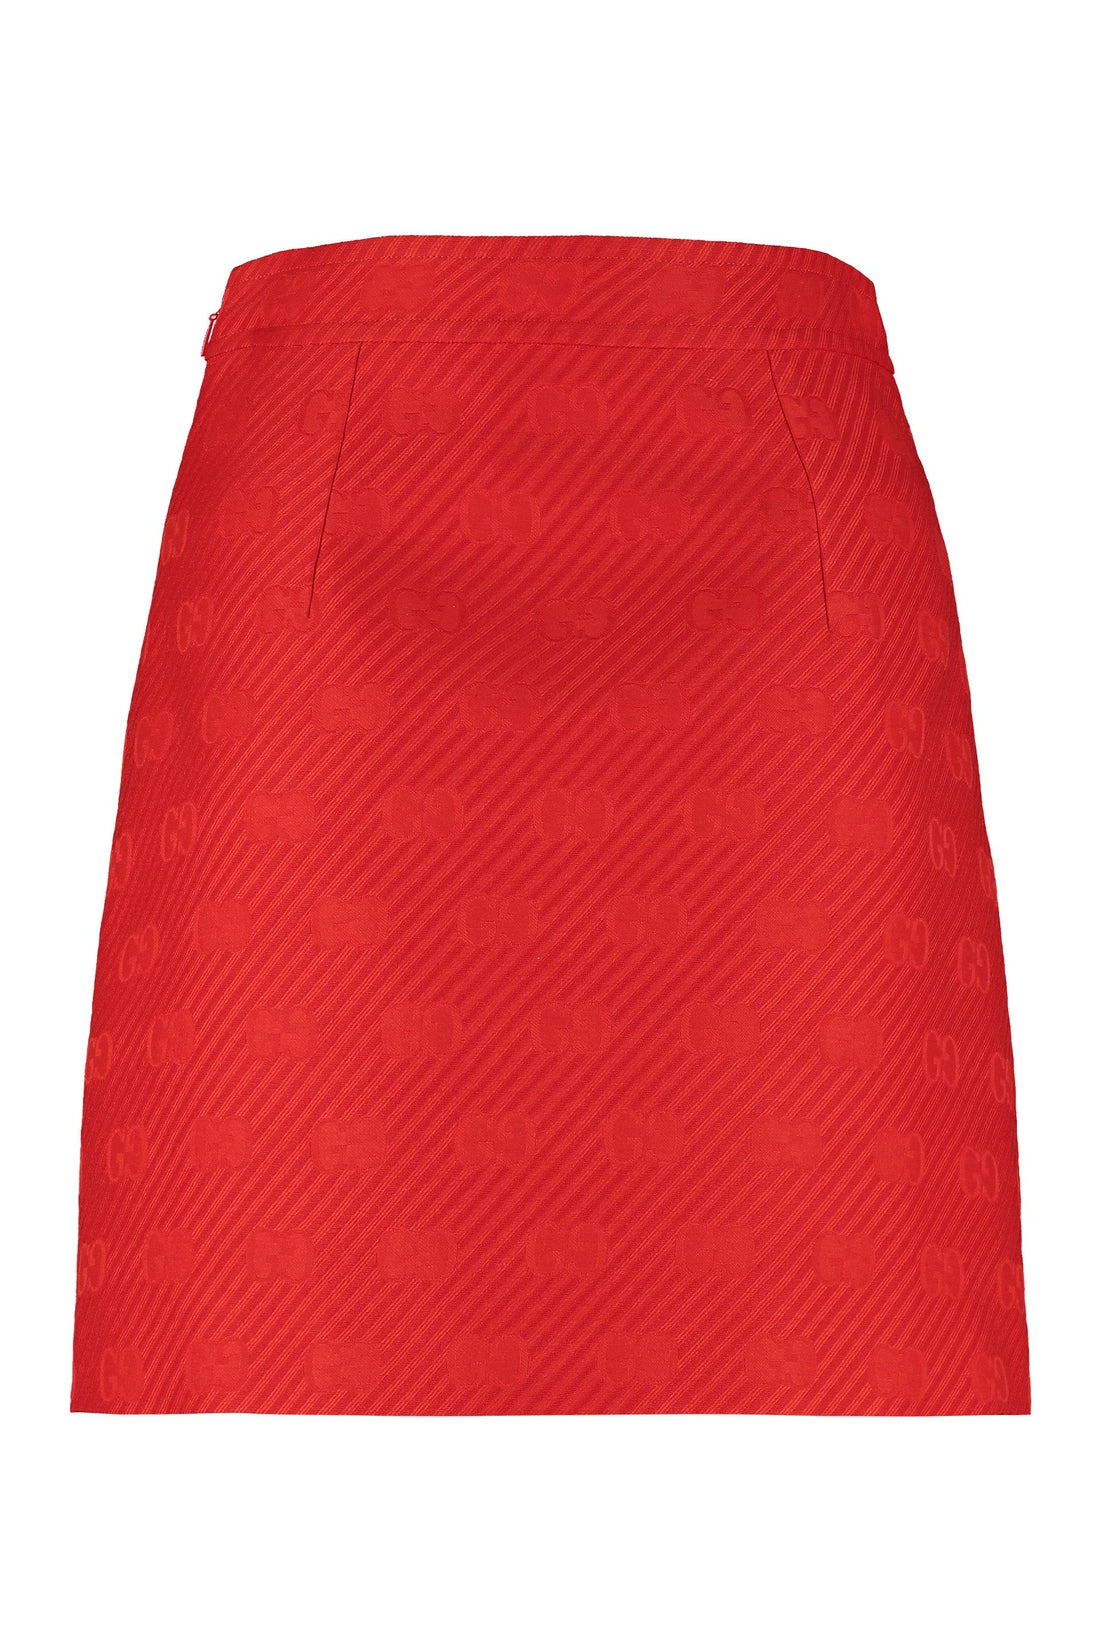 Gucci-OUTLET-SALE-Jacquard mini skirt-ARCHIVIST